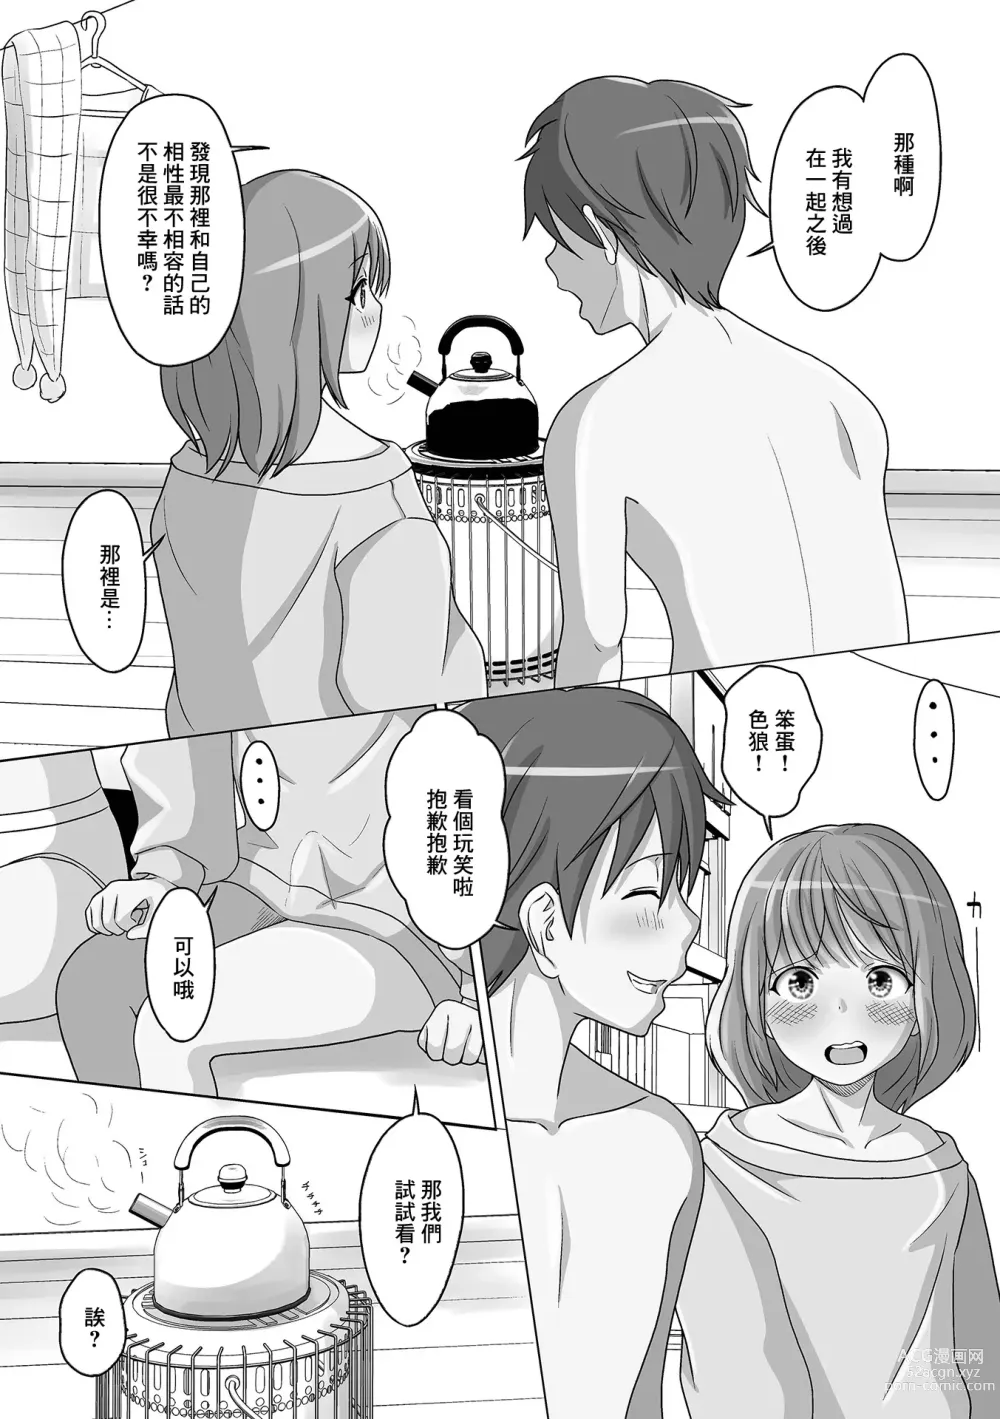 Page 4 of manga Kuchiyakusoku wa Otameshi no Ato de